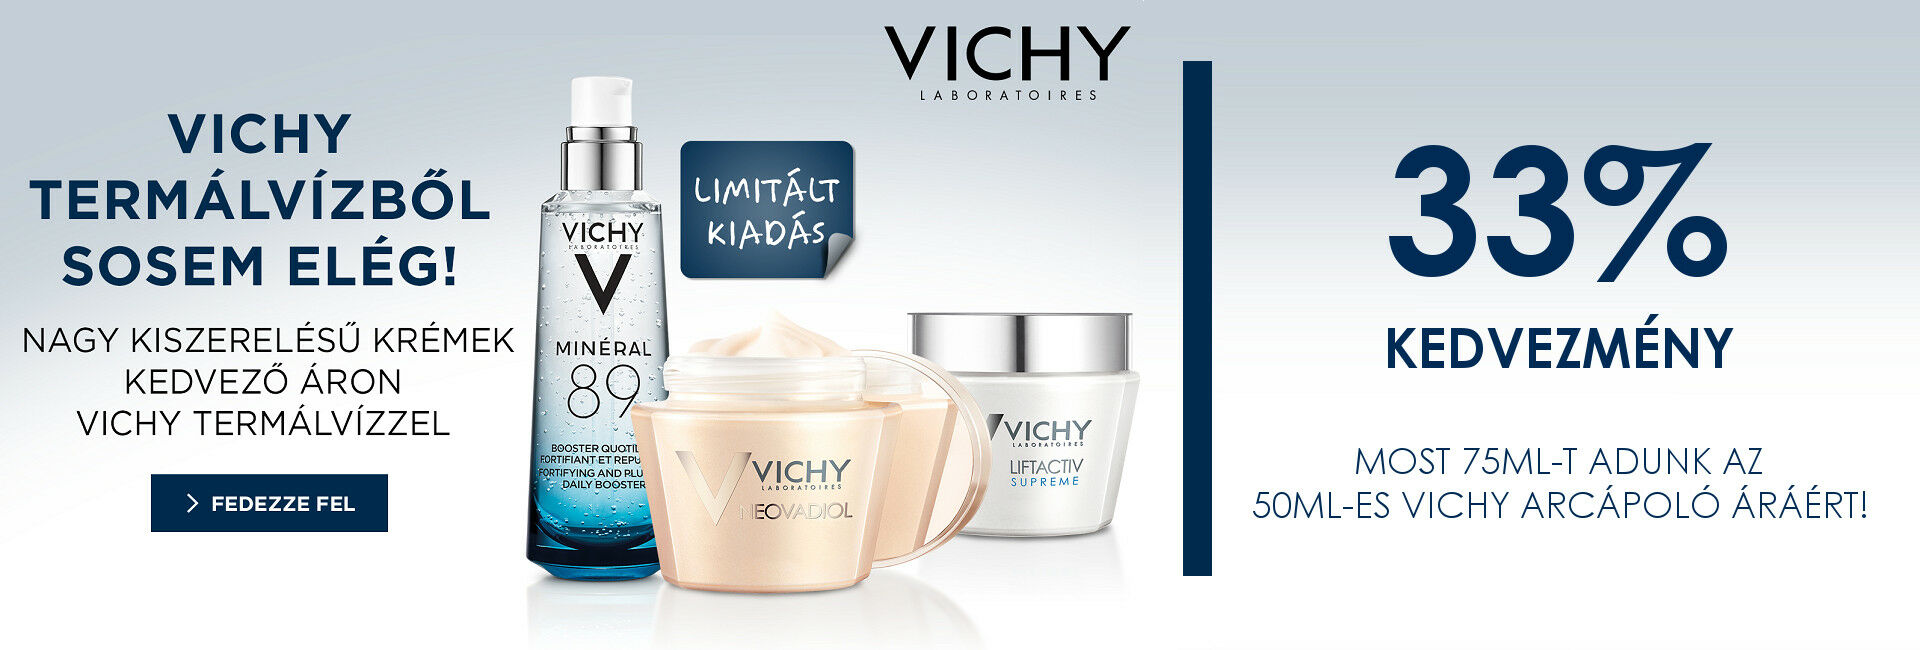 Vichy 75ml-es limitált kiadású arcápolókat most az 50ml-es termék áráért kínáljuk!